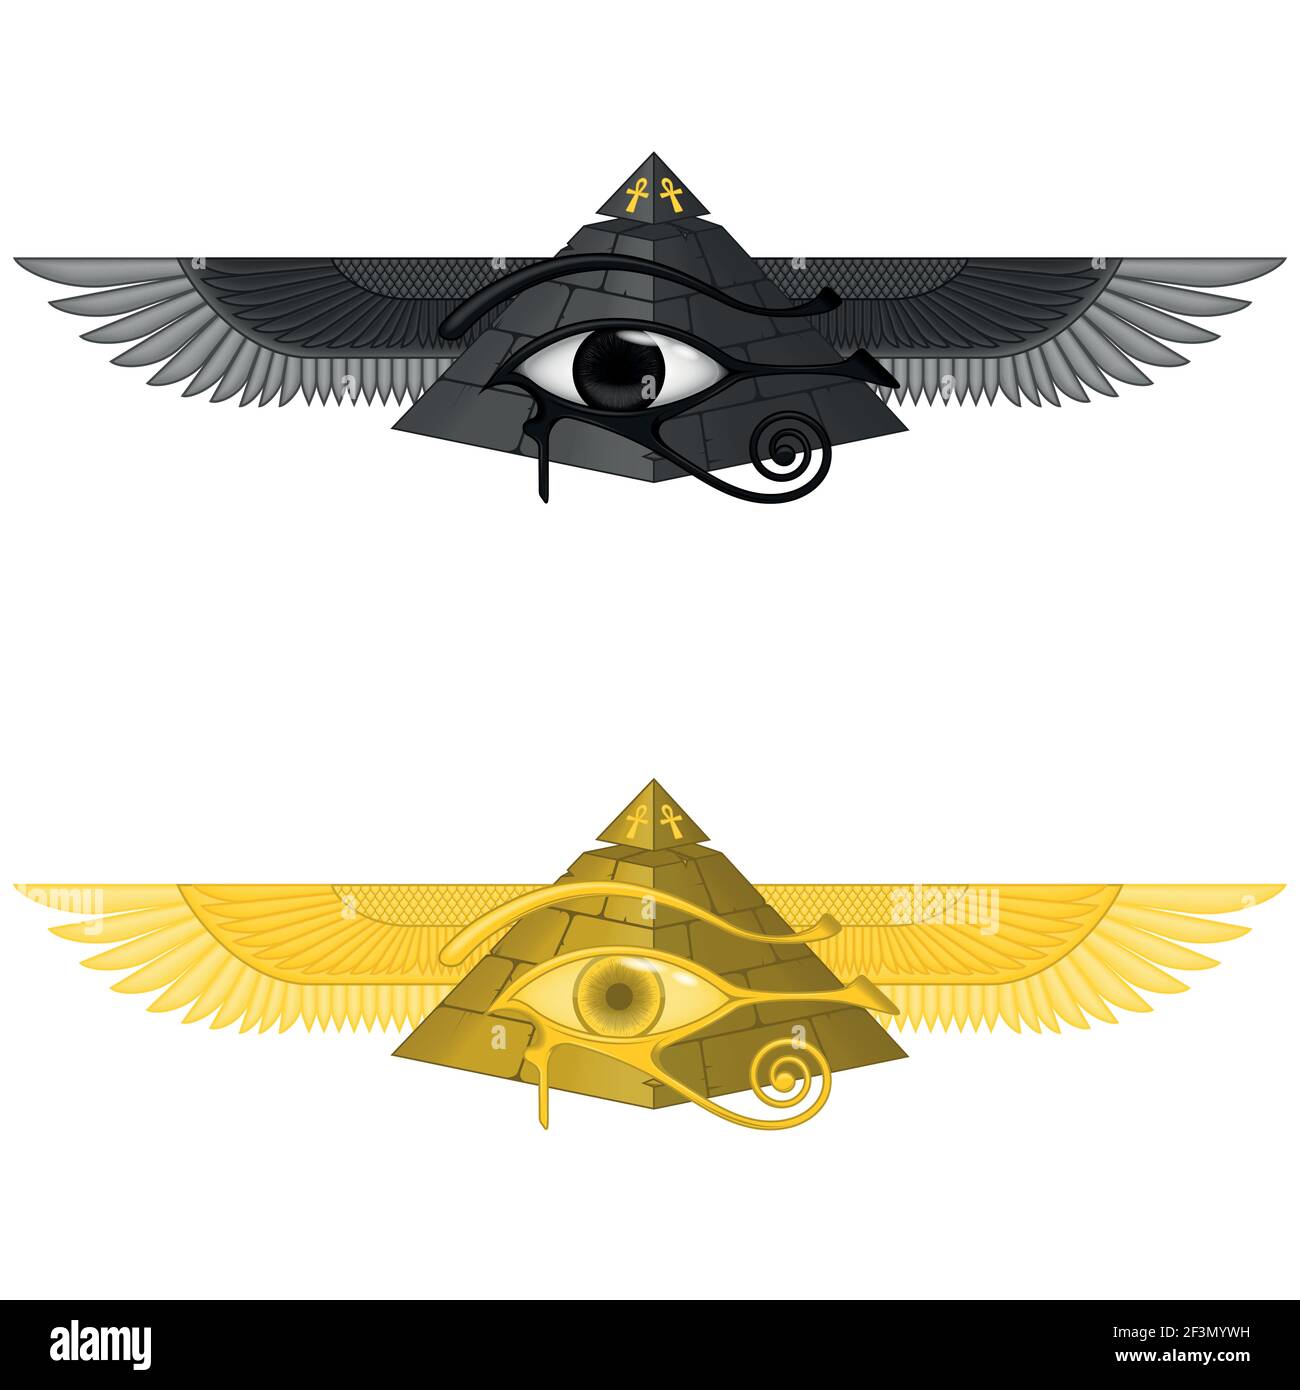 Illustration vectorielle de la pyramide aigée avec l'œil d'horus, l'ancienne pyramide égyptienne avec des ailes, la pyramide ailées, l'œil d'horus, la croix ankh Illustration de Vecteur